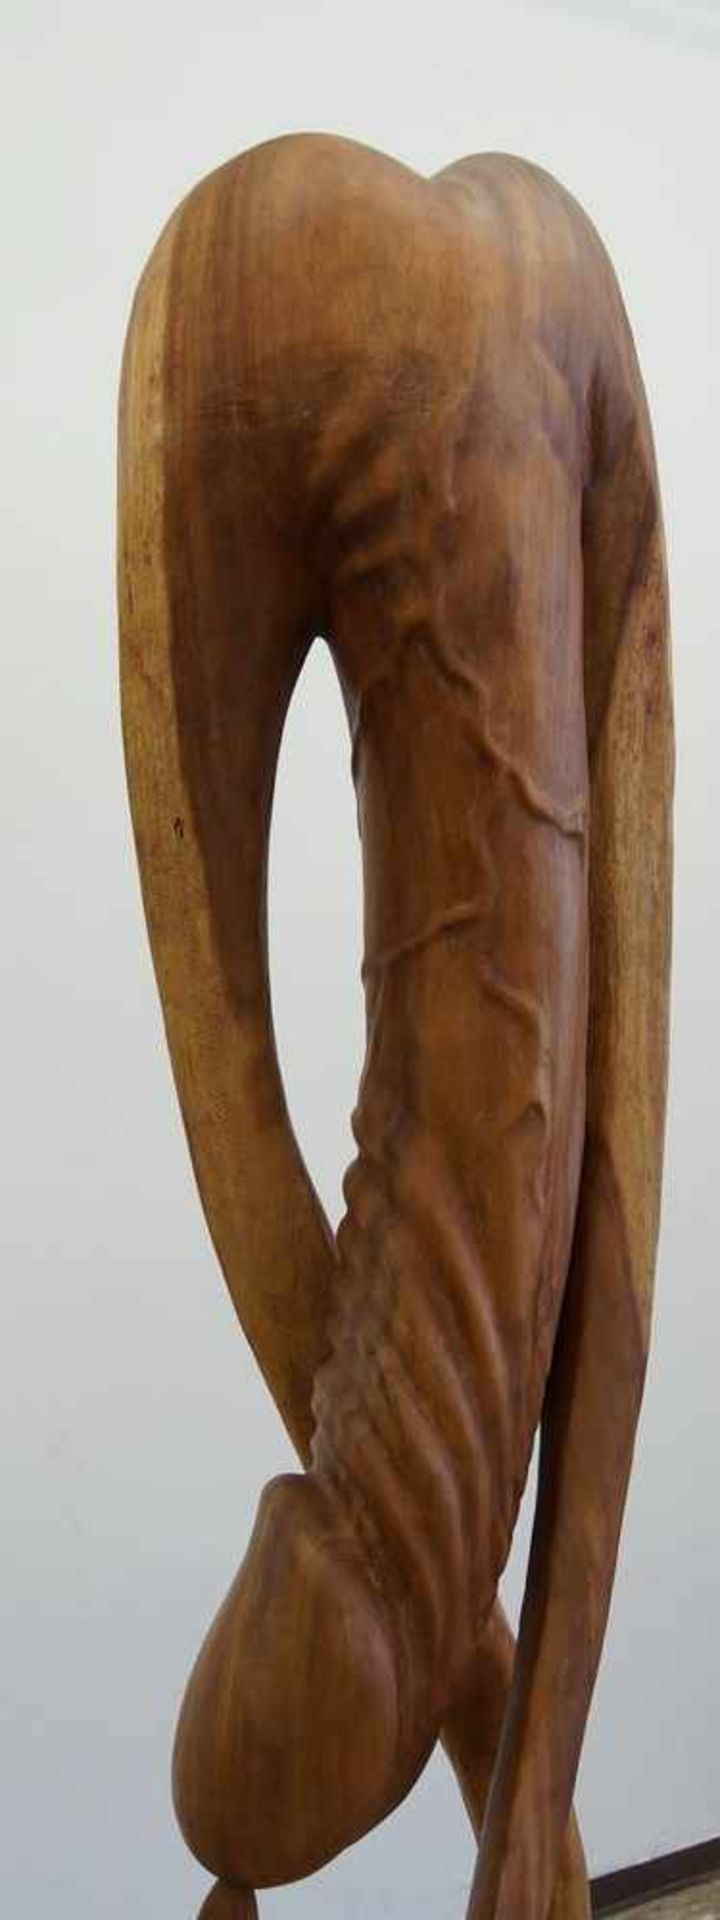 Grosser, in Holz geschnitzter Phallus in abstrakter Darstellung, H 170 cm - Bild 3 aus 6